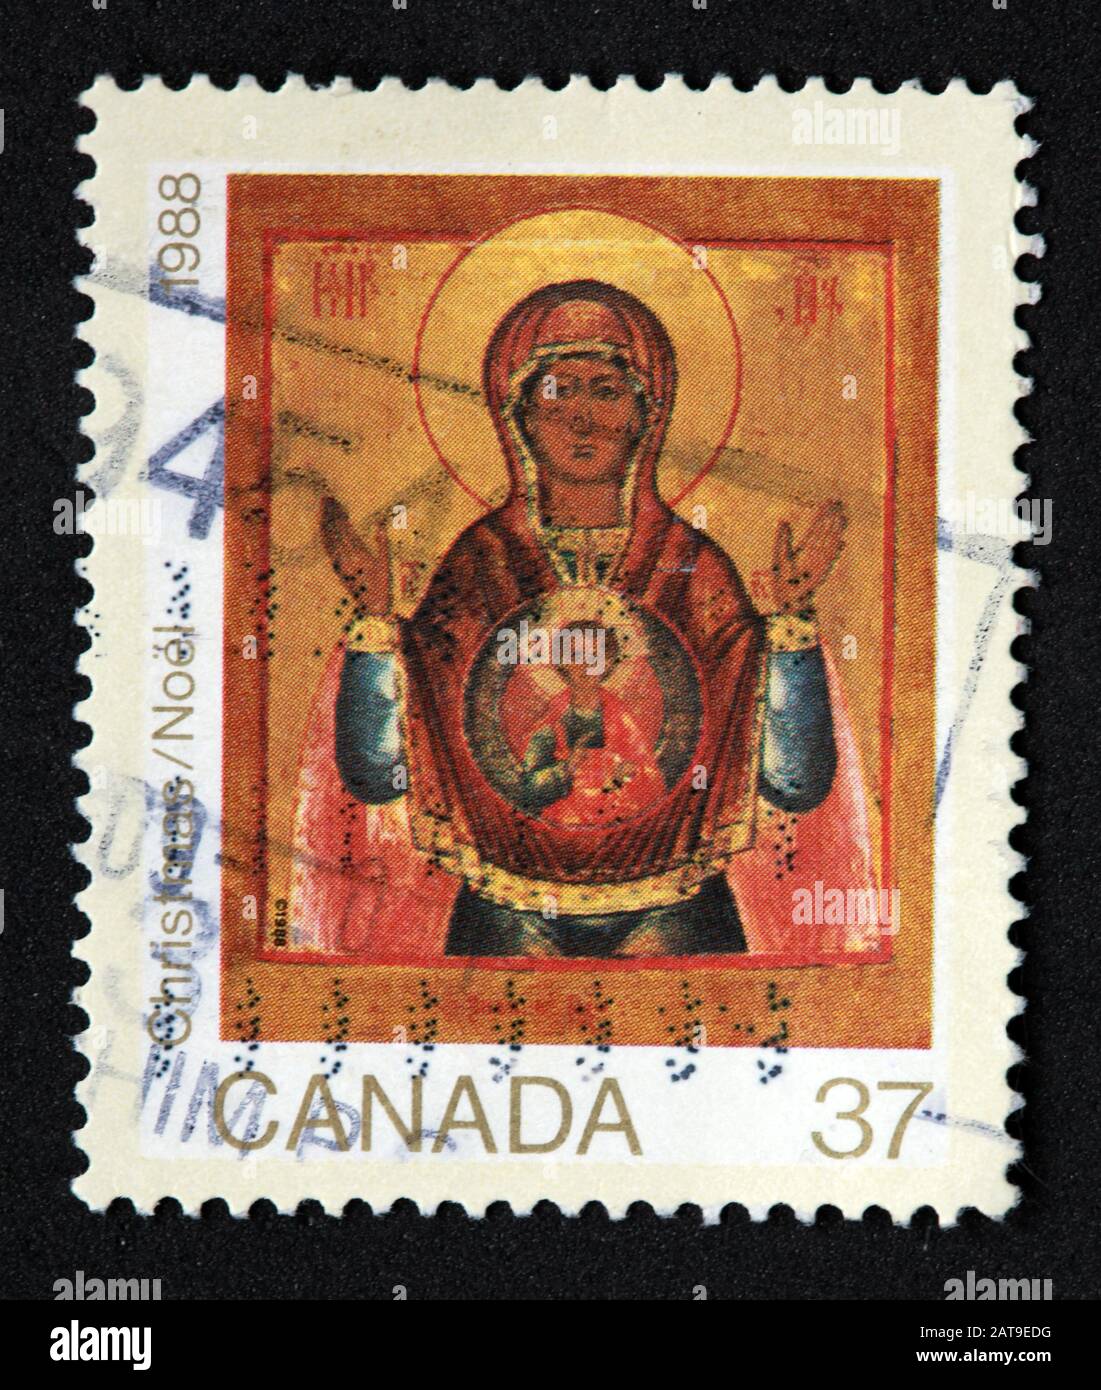 Timbre canadien, Timbre Canada, postes Canada, timbre utilisé, Canada 37 c Noël, Noël, 1988 , ange, Christ, timbre Banque D'Images